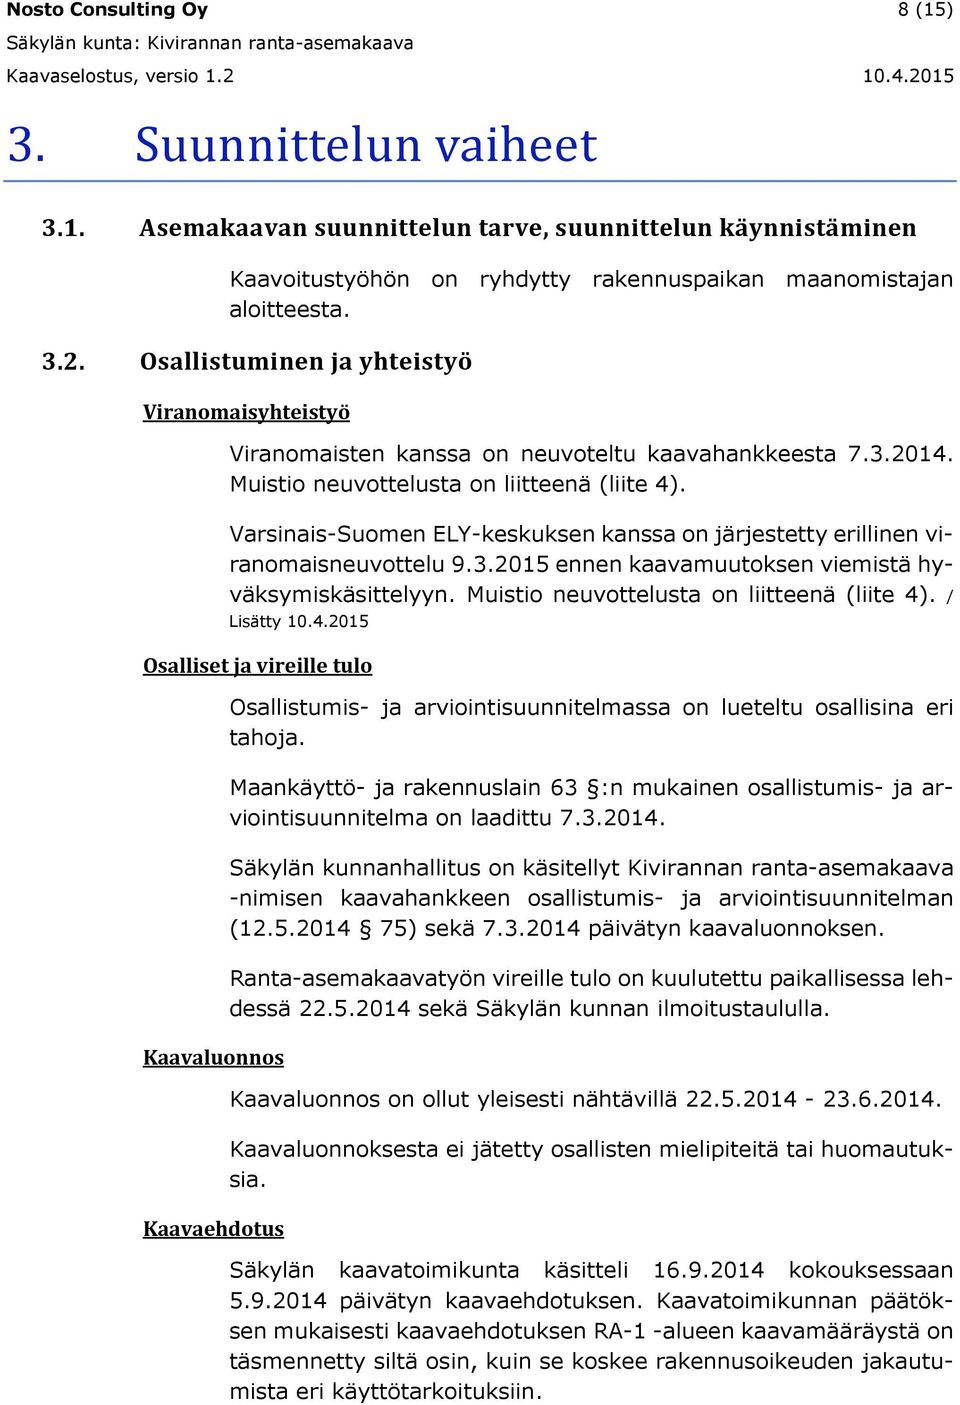 Varsinais-Suomen ELY-keskuksen kanssa on järjestetty erillinen viranomaisneuvottelu 9.3.2015 ennen kaavamuutoksen viemistä hyväksymiskäsittelyyn. Muistio neuvottelusta on liitteenä (liite 4).